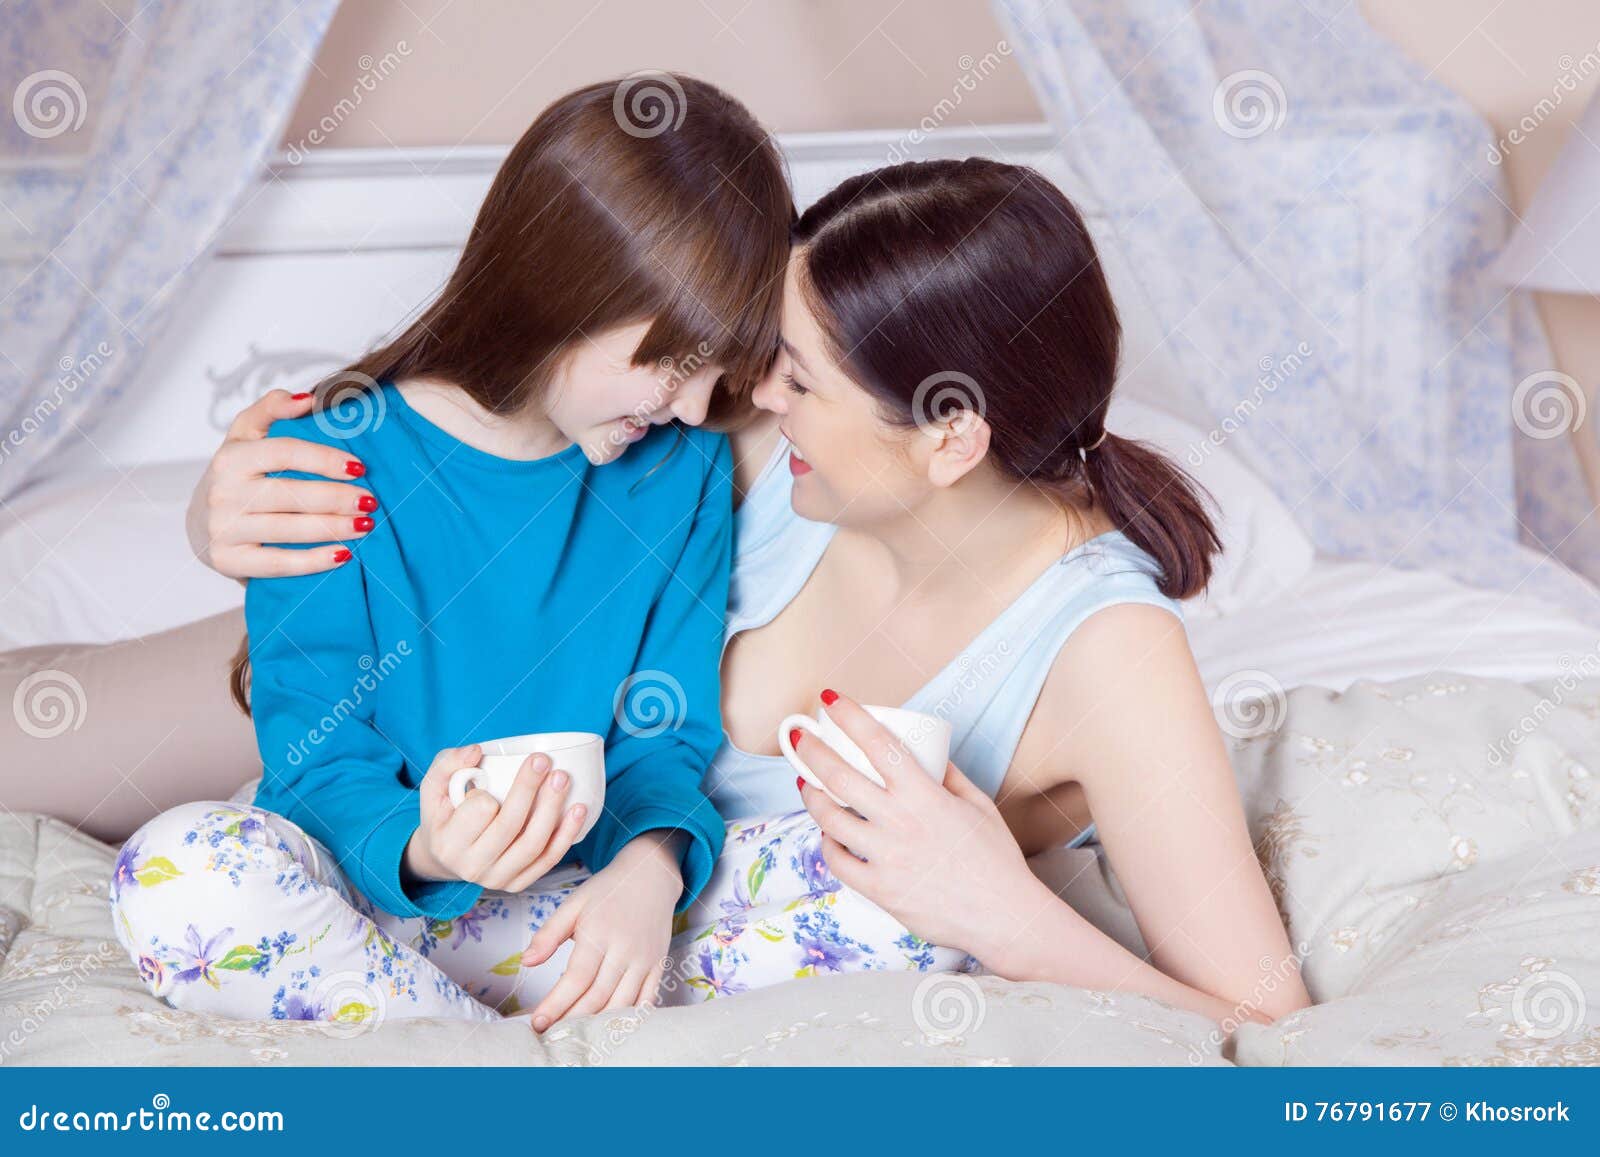 Лизбиянки перевод русский. Мать и дочь в кровати лесби. Мама и дочка Лезби на кровати. Мама и дочка Лезби на кровати x.